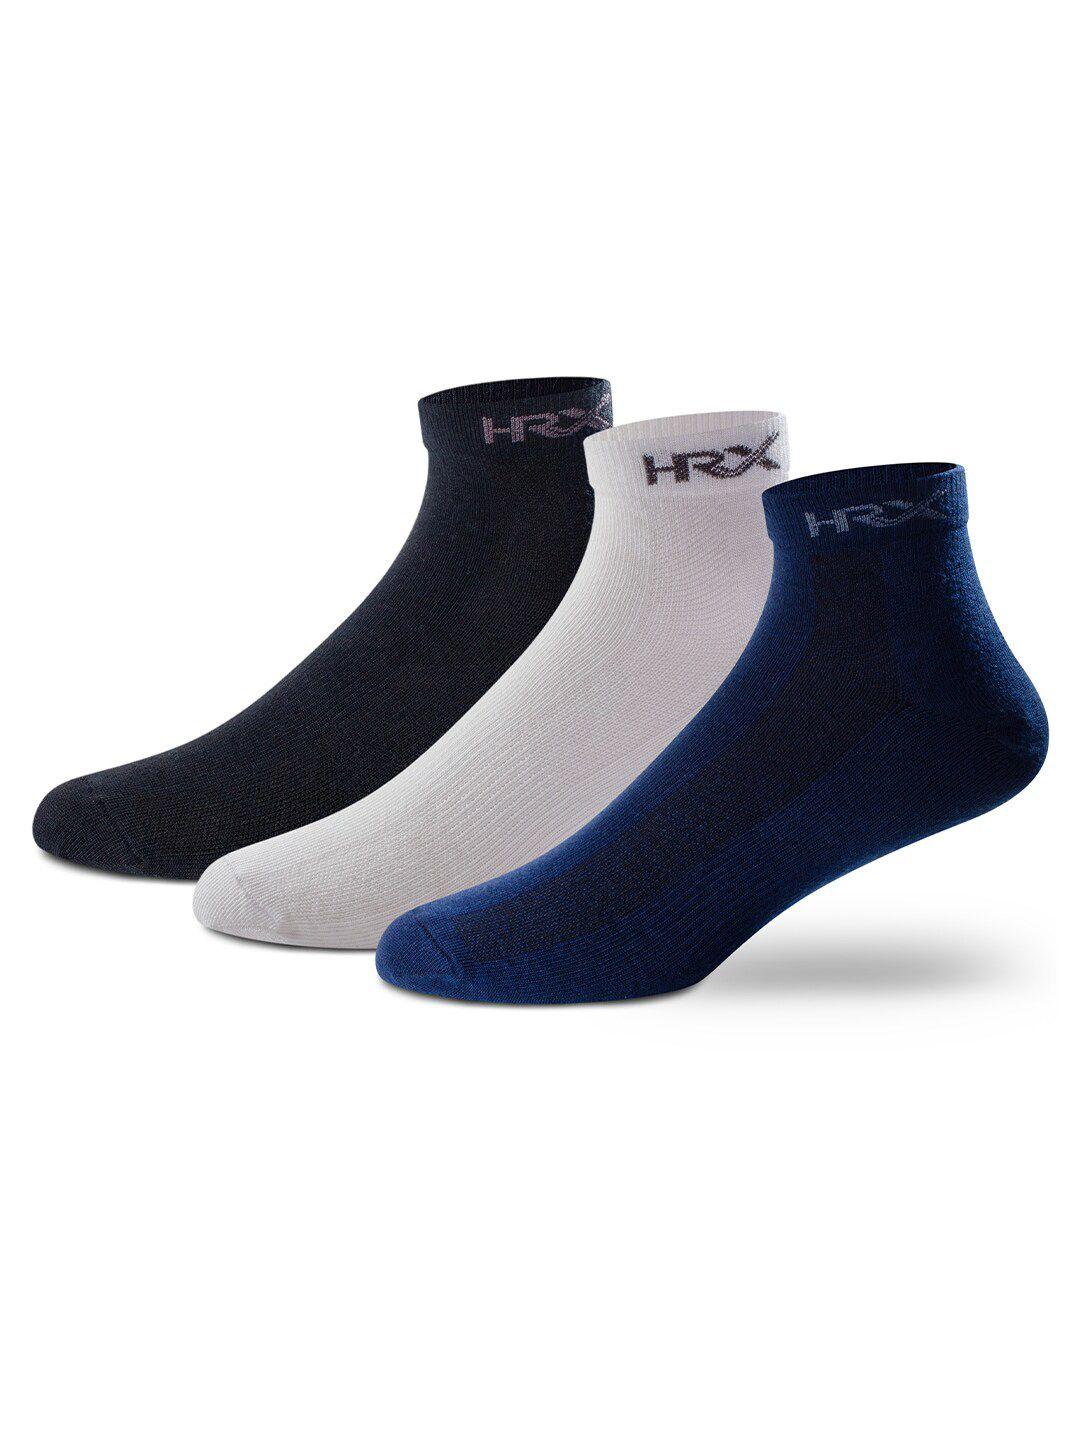 hrx by hrithik roshan men pack of 3 white & blue ankle length socks